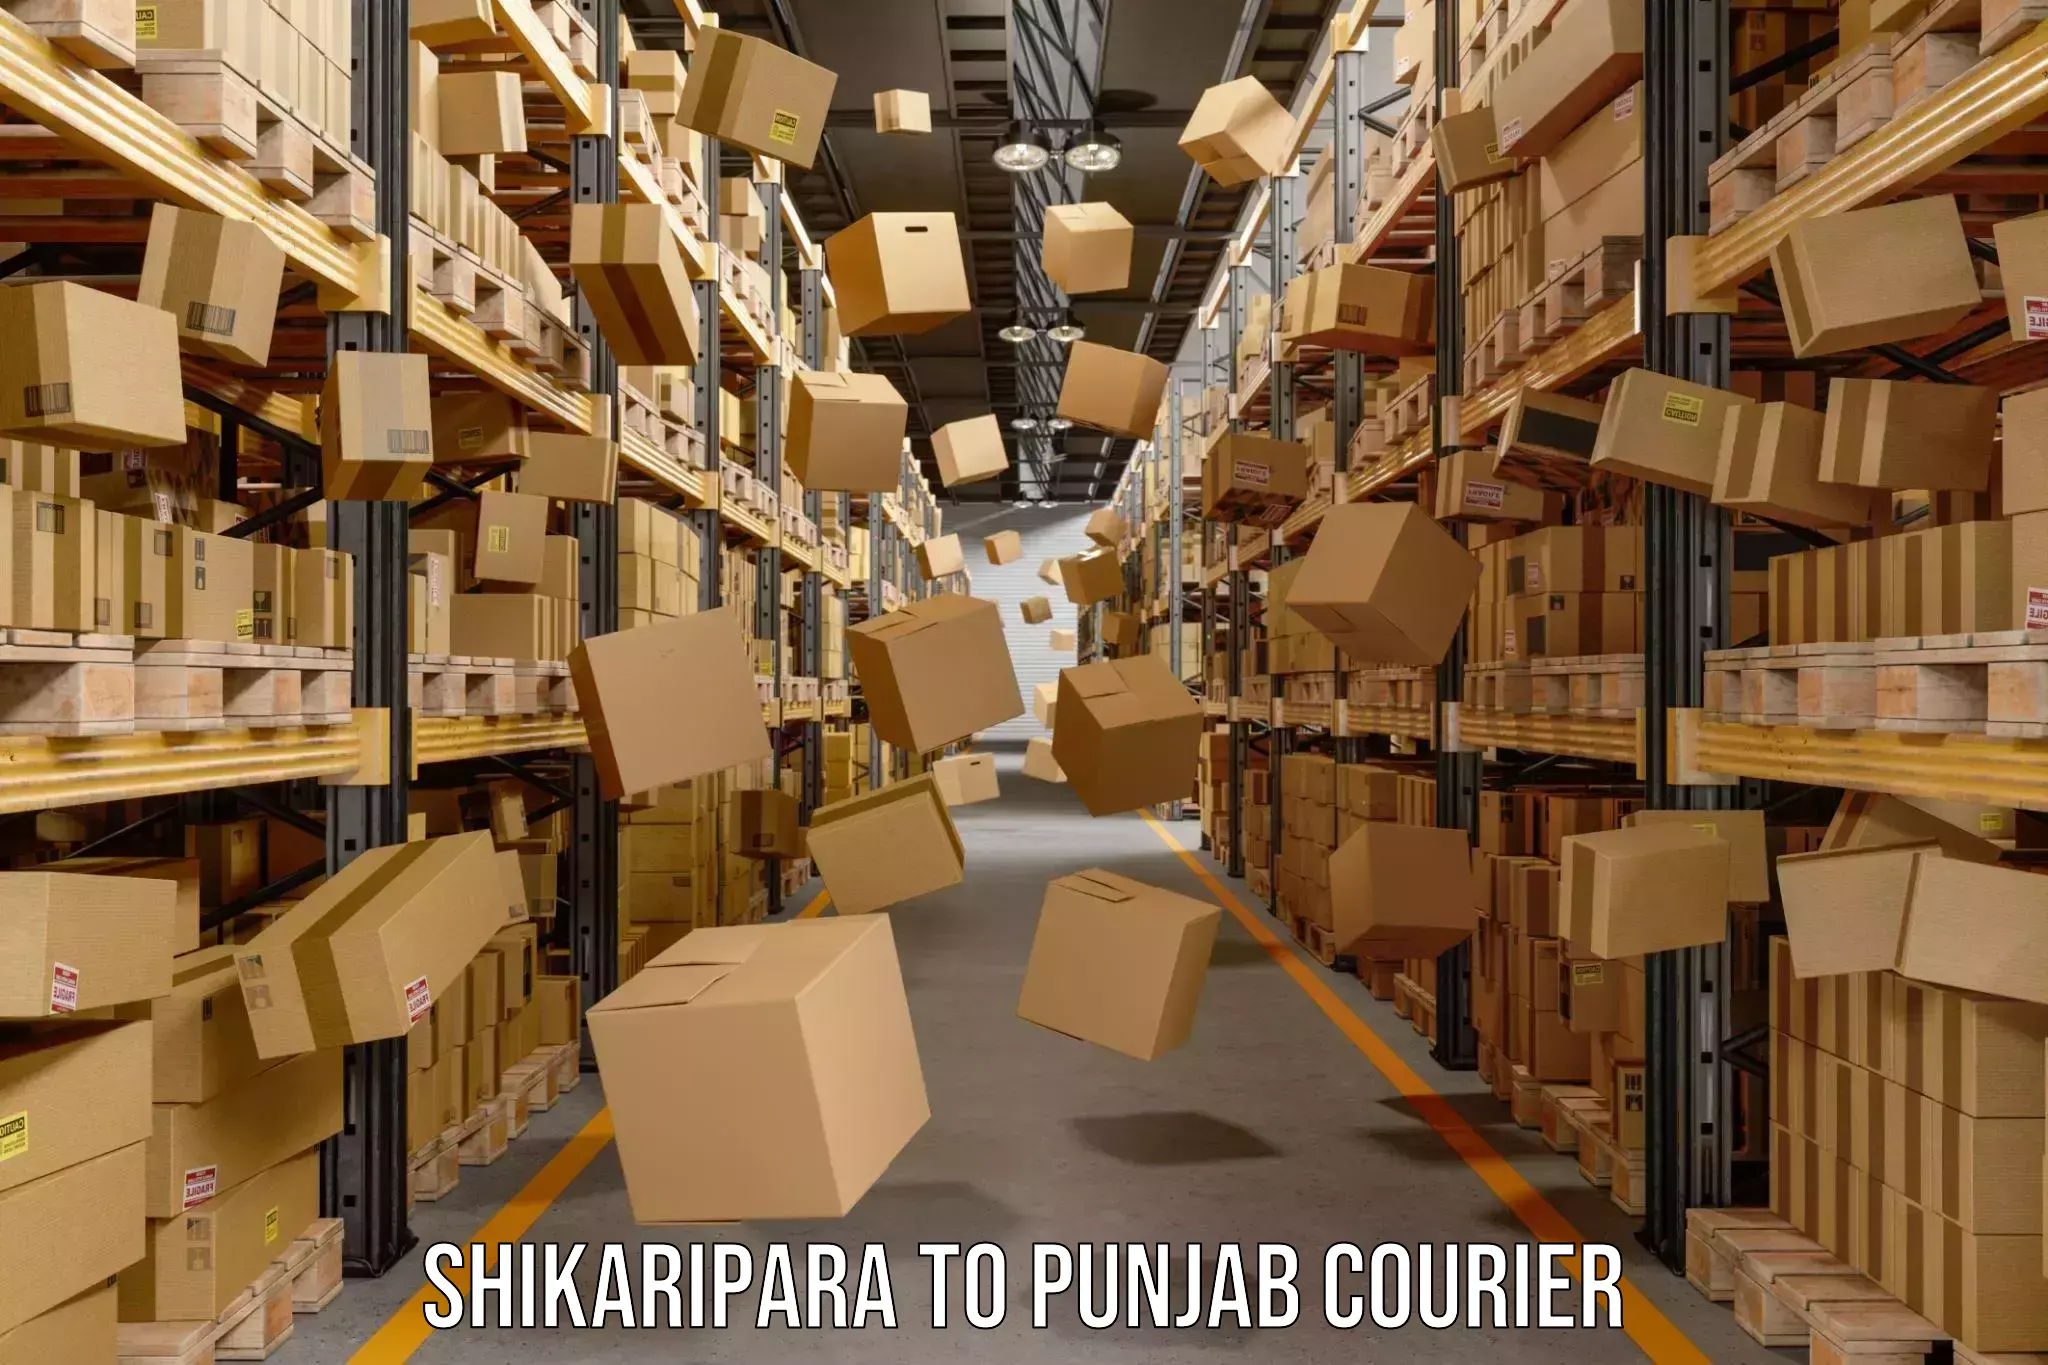 Courier service innovation Shikaripara to Bhadaur